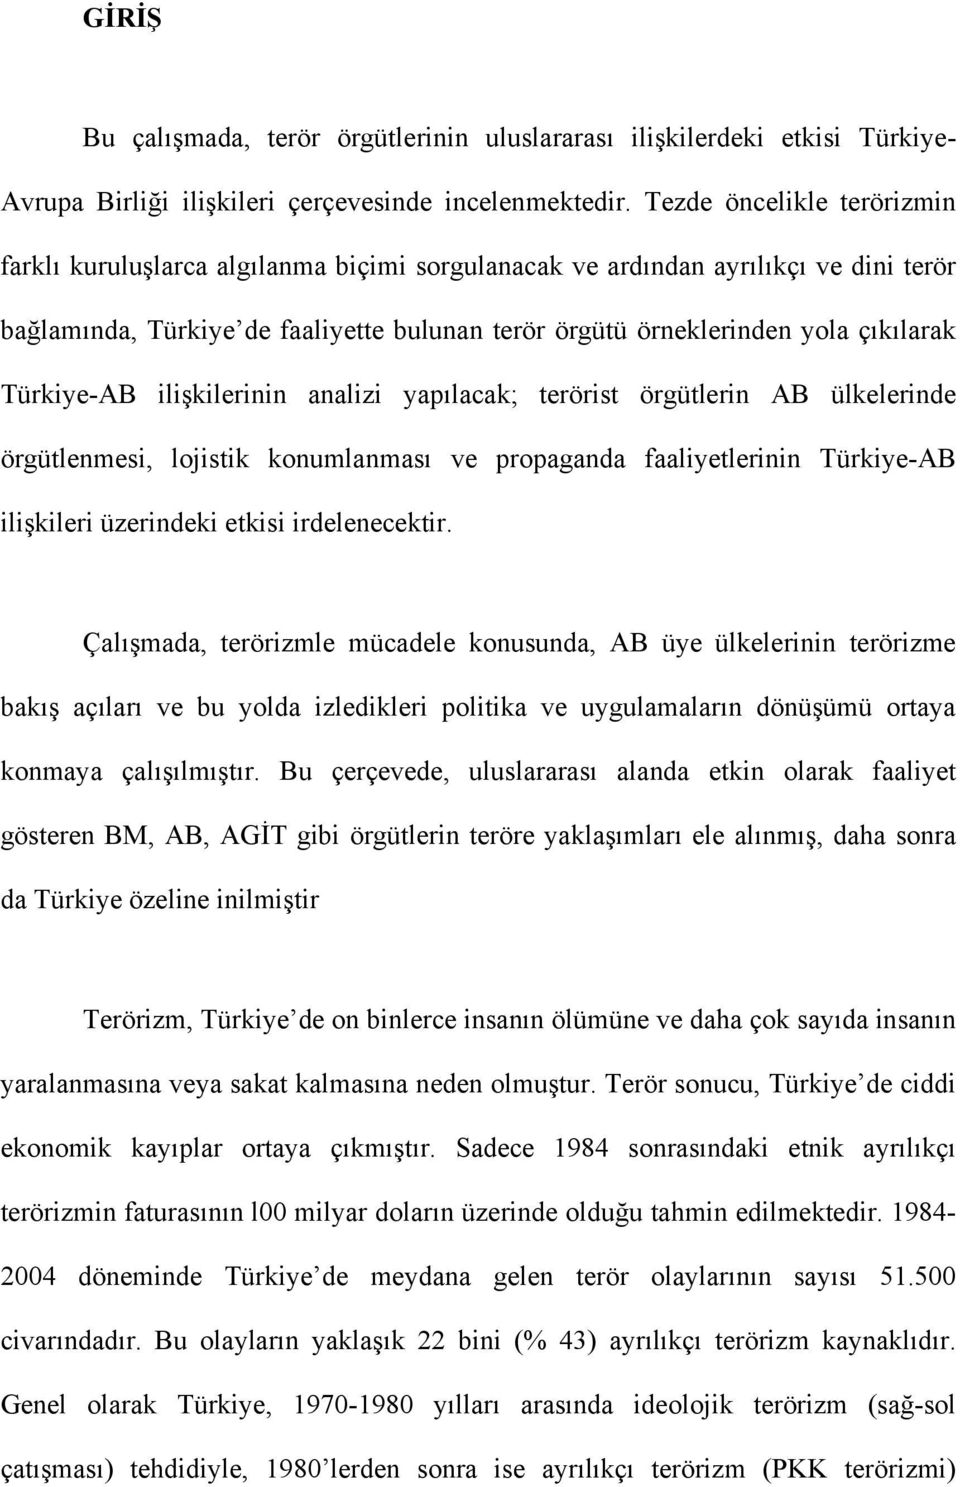 Türkiye-AB ilişkilerinin analizi yapılacak; terörist örgütlerin AB ülkelerinde örgütlenmesi, lojistik konumlanması ve propaganda faaliyetlerinin Türkiye-AB ilişkileri üzerindeki etkisi irdelenecektir.